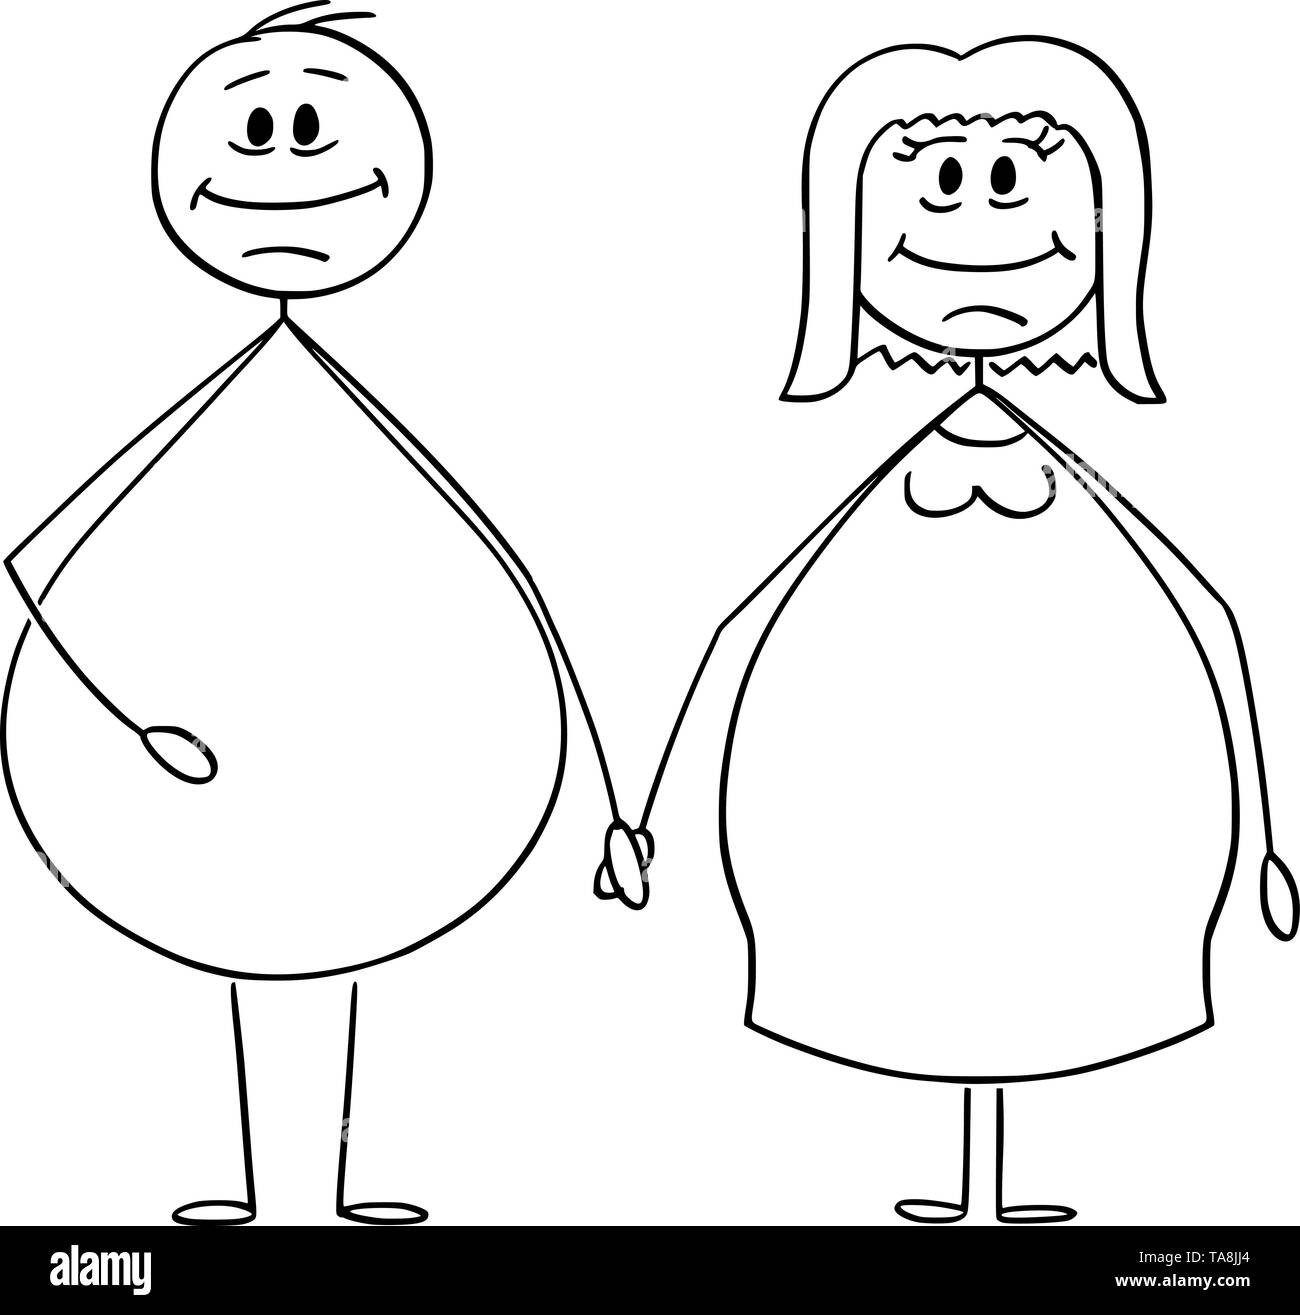 Vektor cartoon Strichmännchen Zeichnen konzeptionelle Darstellung der übergewichtig oder fettleibig heterosexueller Paare von Mann und Frau halten sich an den Händen. Stock Vektor